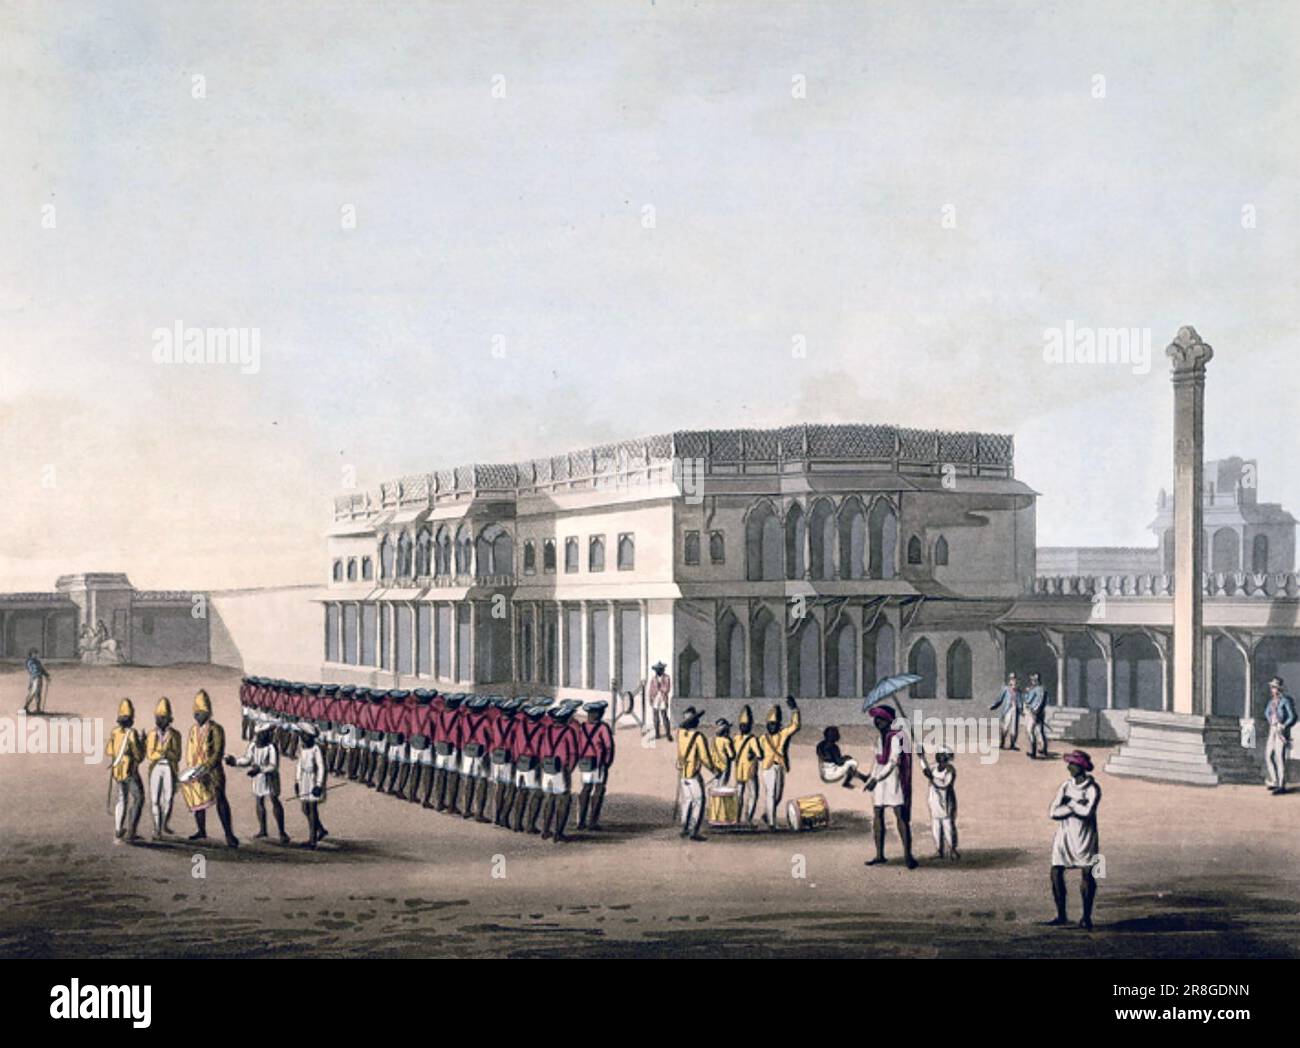 OSTINDIEN-FIRMA Sepoys in roten Mänteln auf dem Gelände des ehemaligen Sommerpalastes von Tipu Sultan in Bangalore im Jahr 1804. Unternehmensbeamte beobachten die Vorgänge auf der rechten Seite. Stockfoto